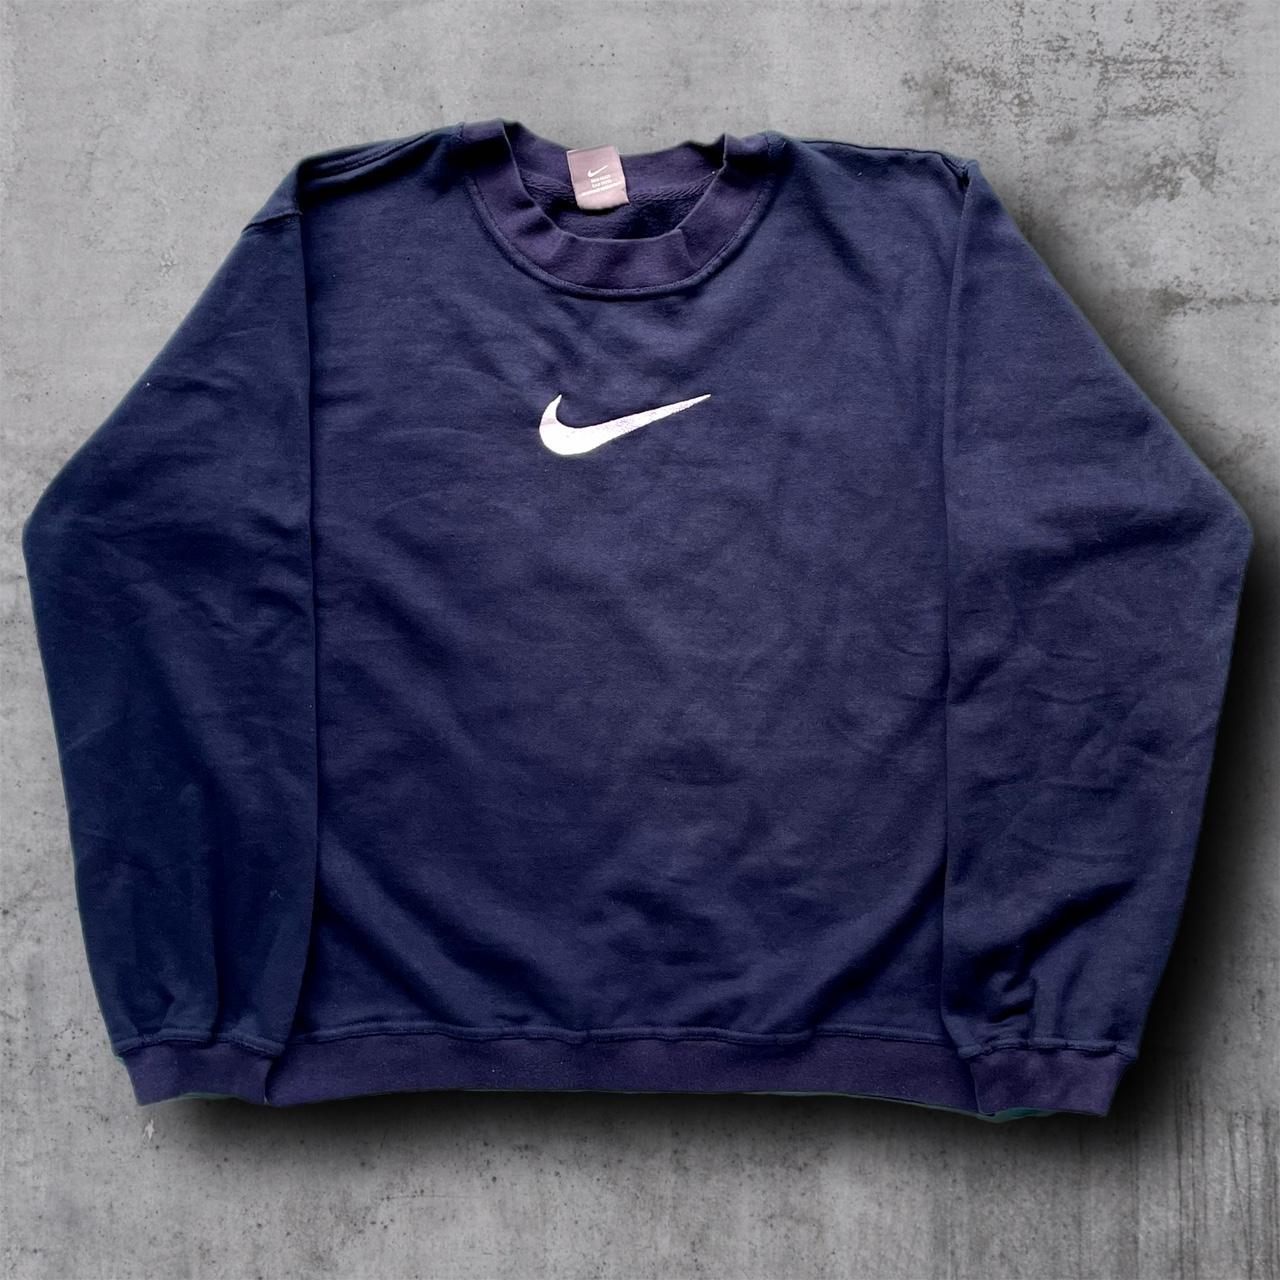 Nike Men's Navy Sweatshirt | Depop